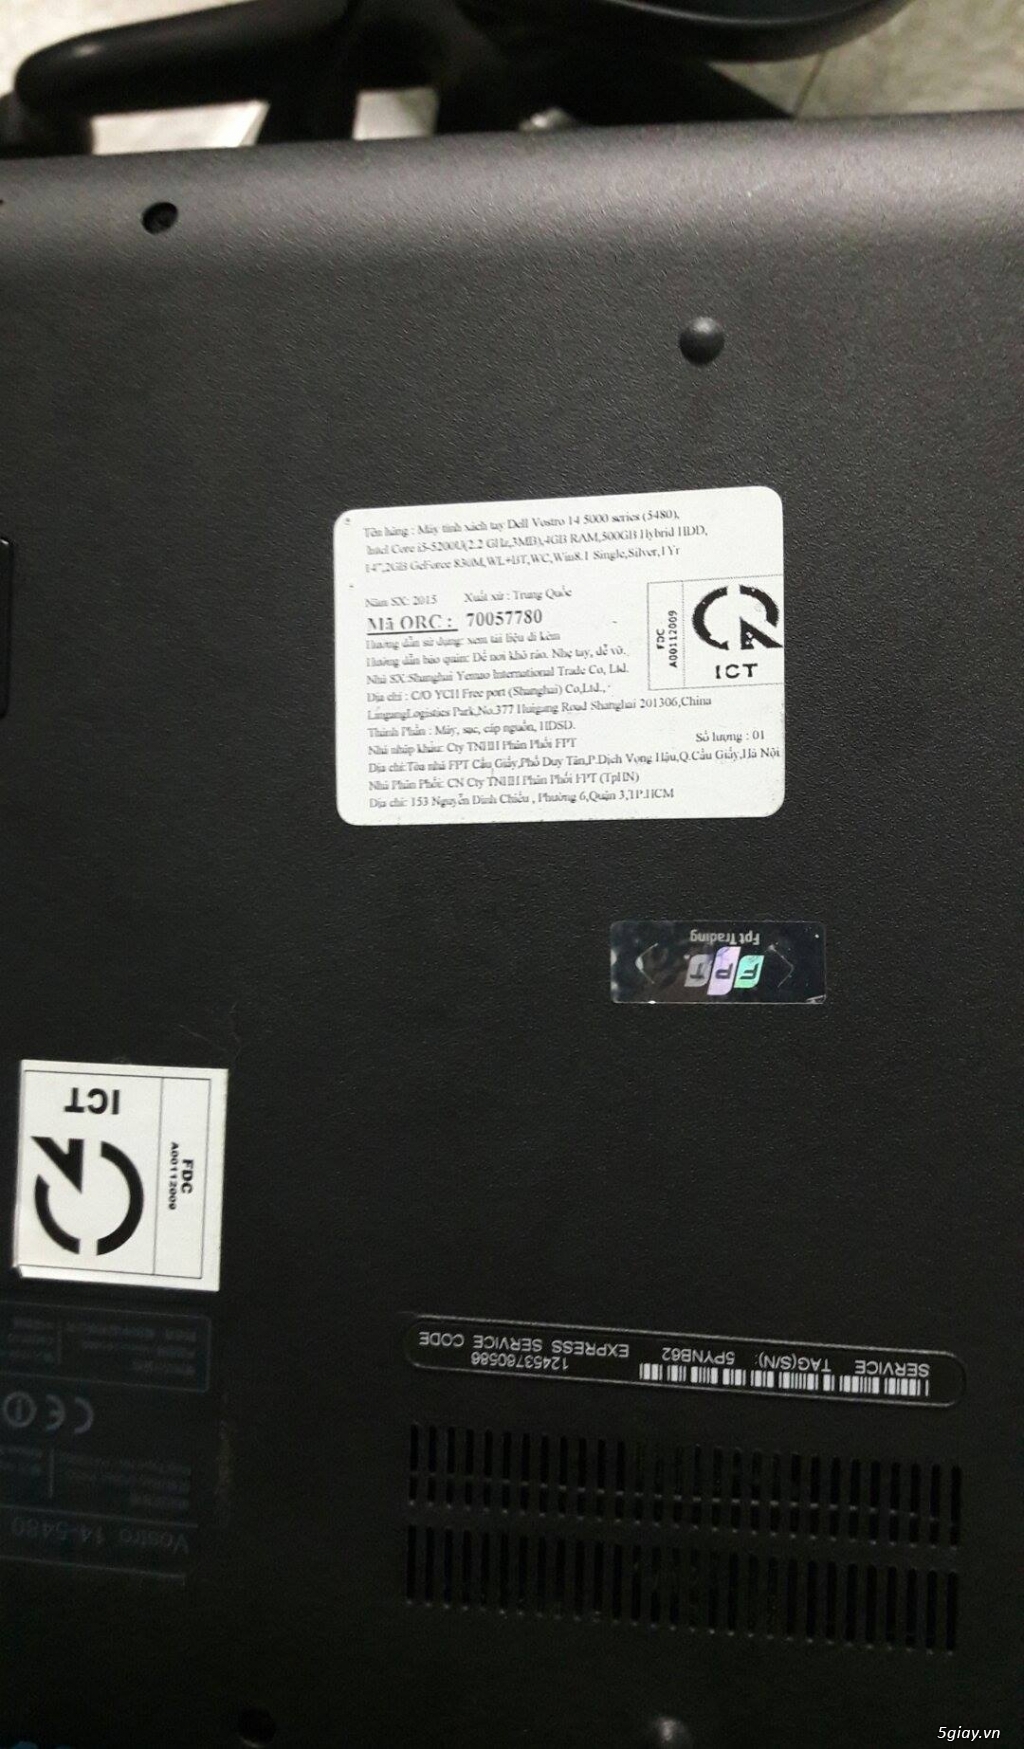 Bán DELL VOSTRO 5480 I5 4GB xám, chính hãng FPT đầy đủ hộp sách, mới dùng 2 tháng, chưa kích hoạt bả - 4